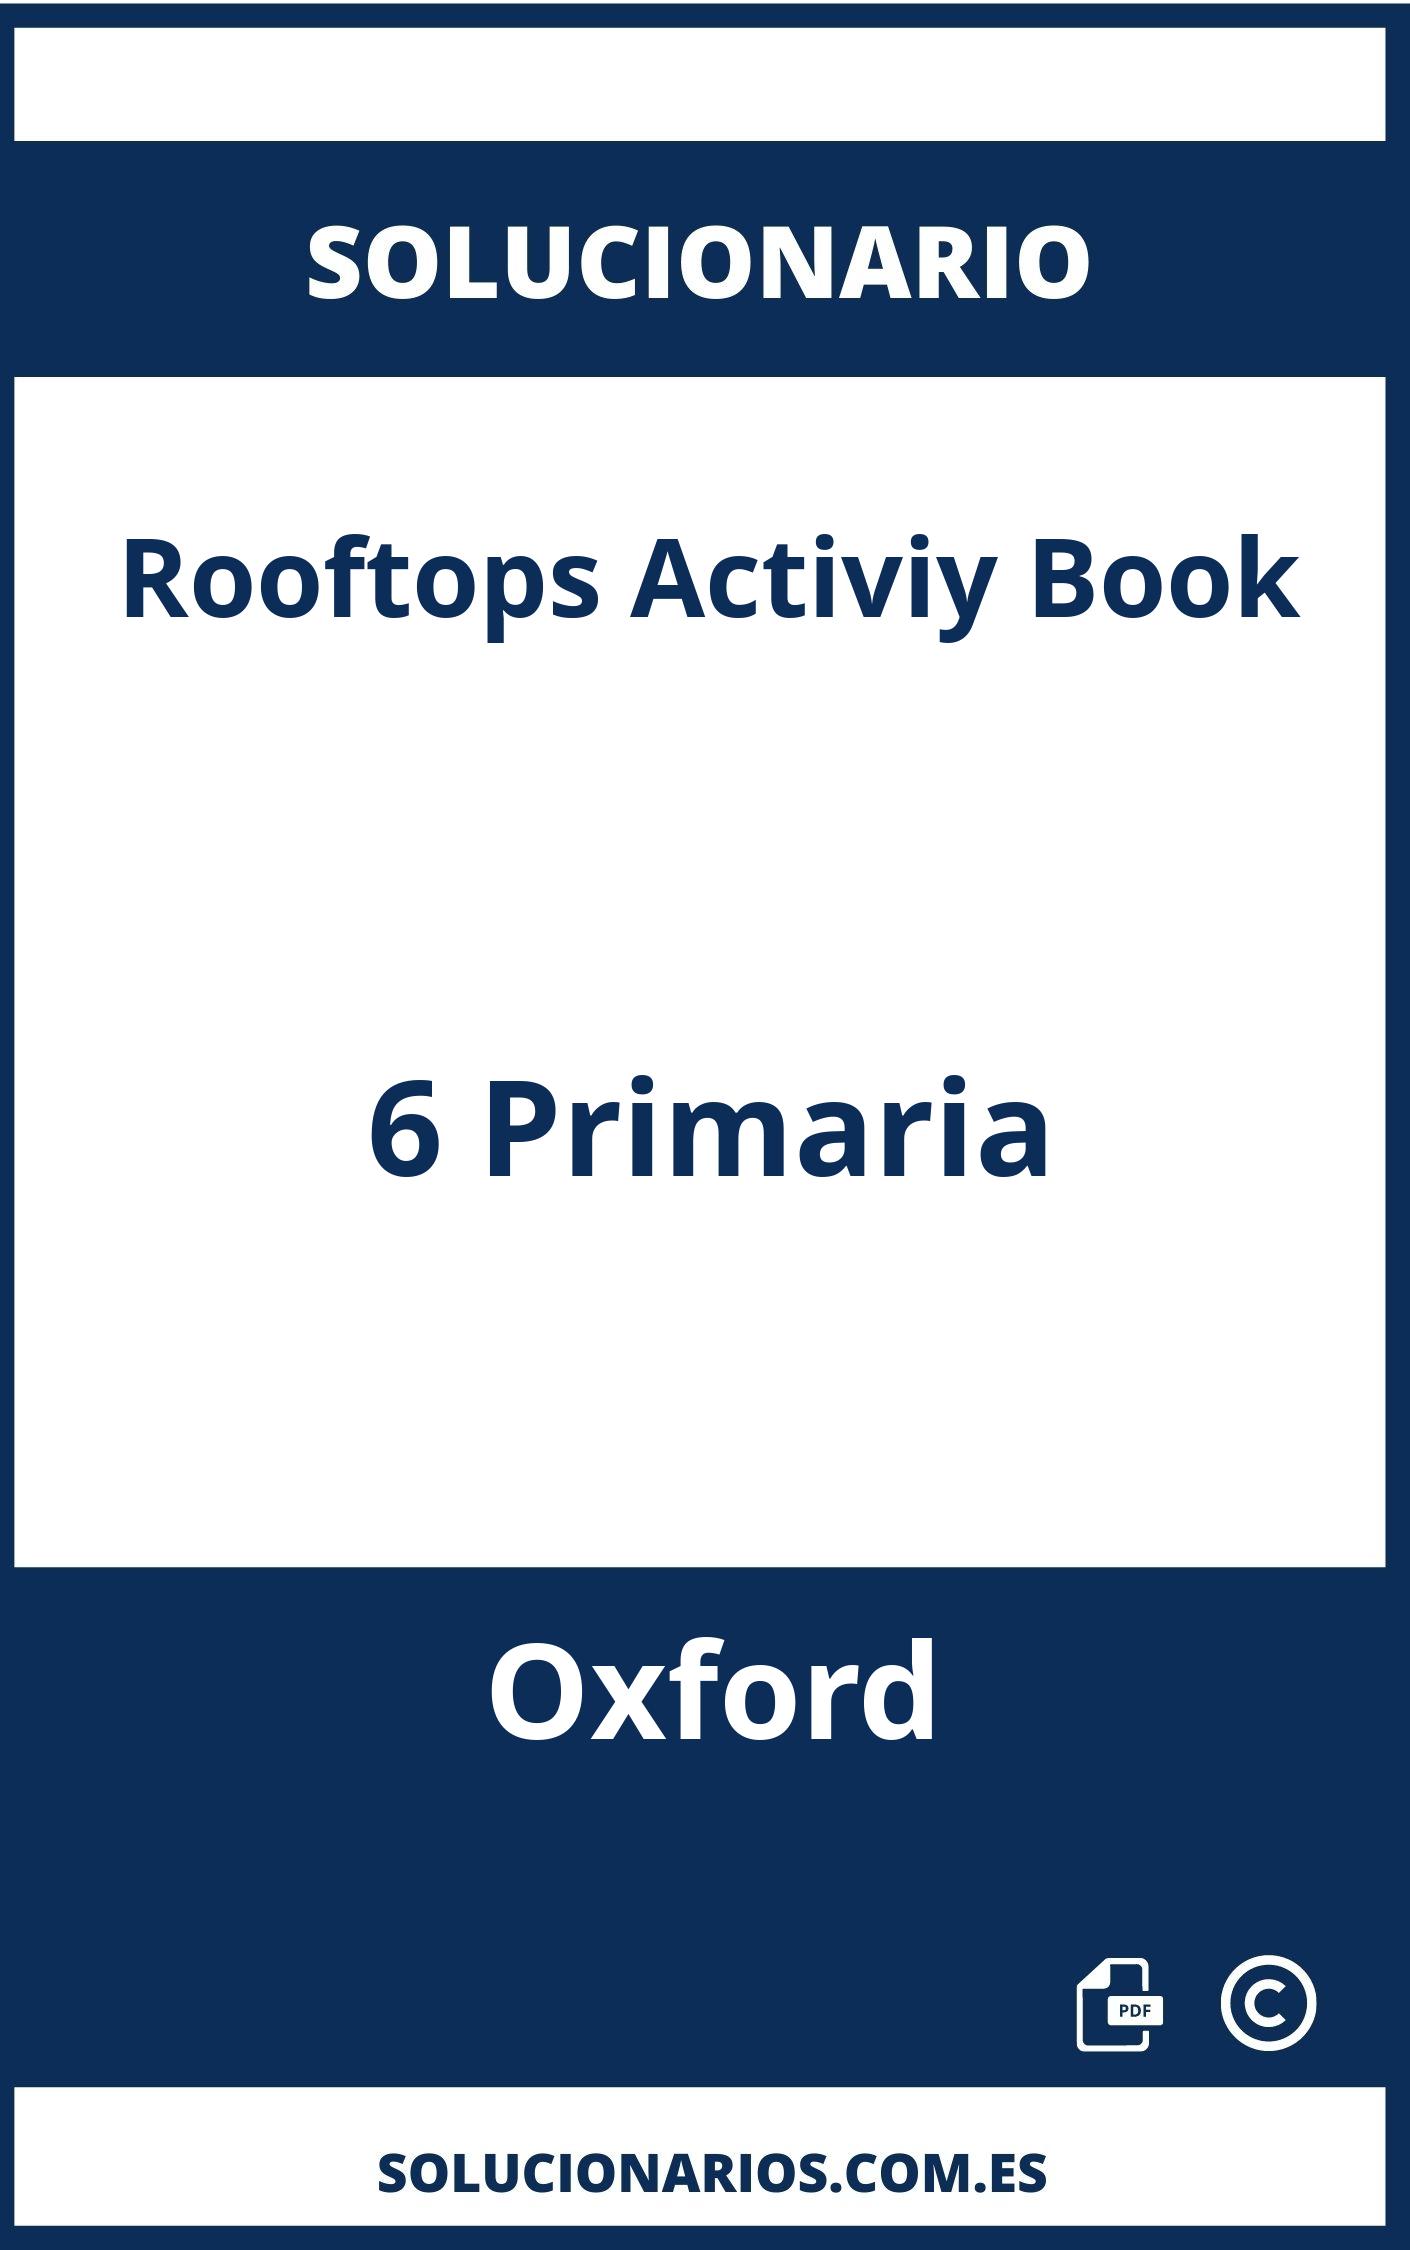 Solucionario Rooftops Activiy Book 6 Primaria Oxford